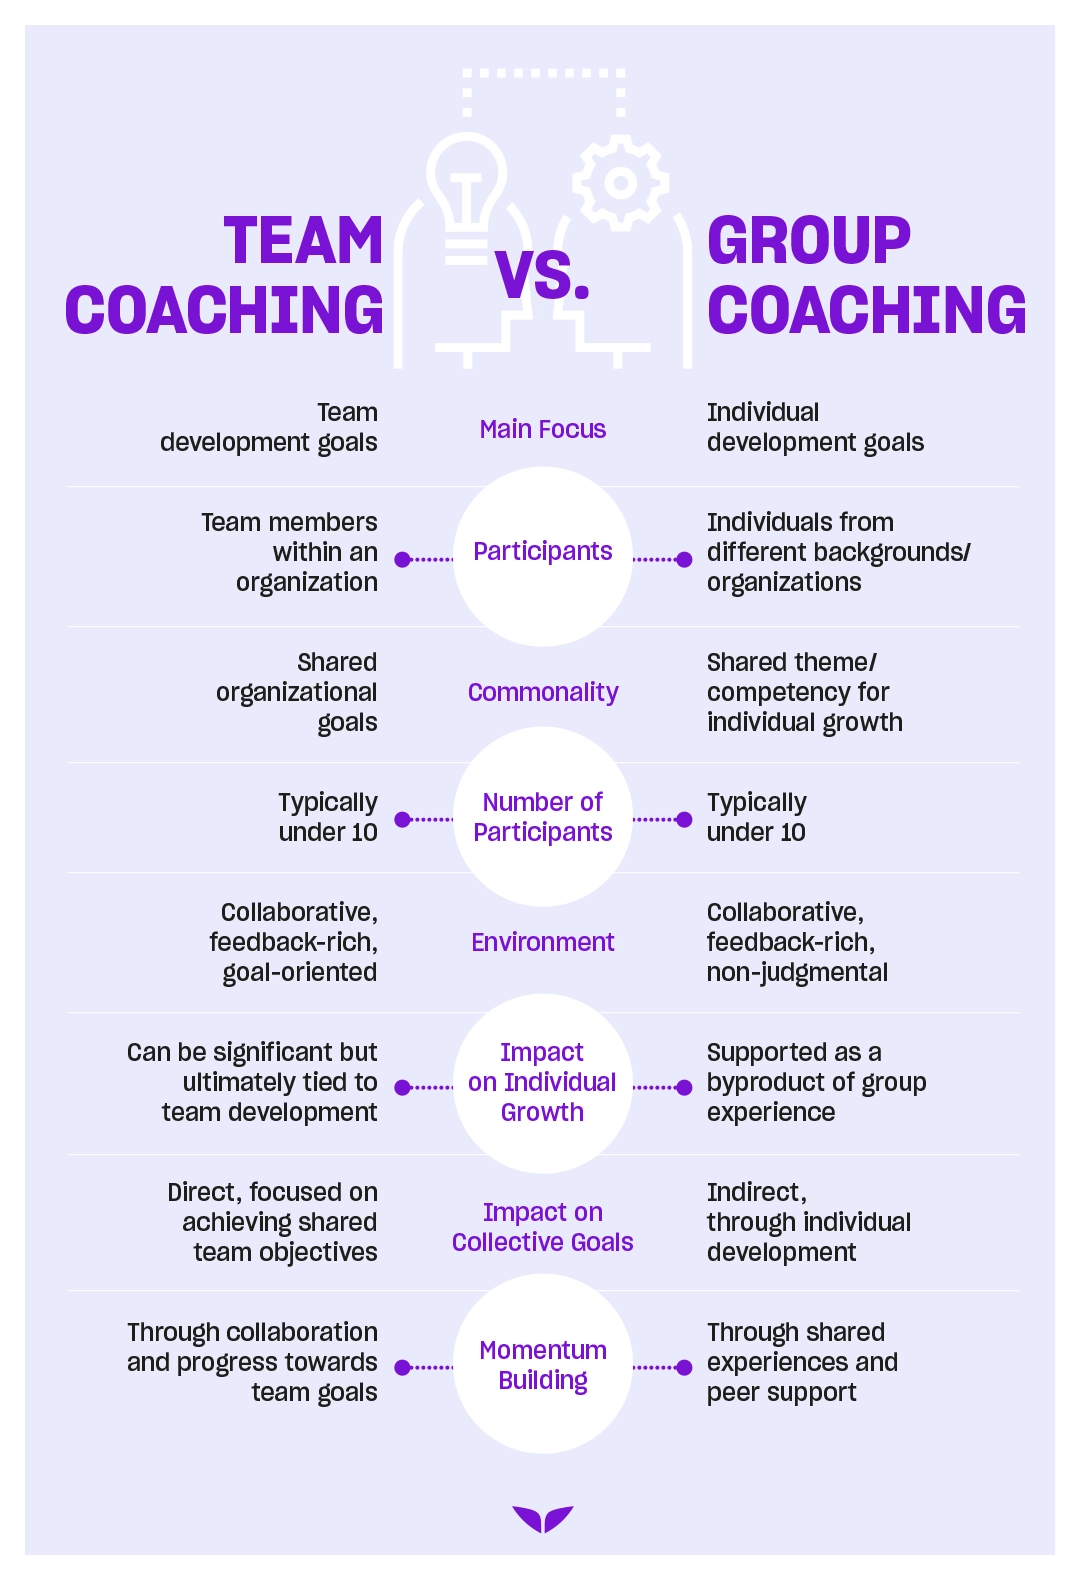 Team Coaching vs. Group Coaching